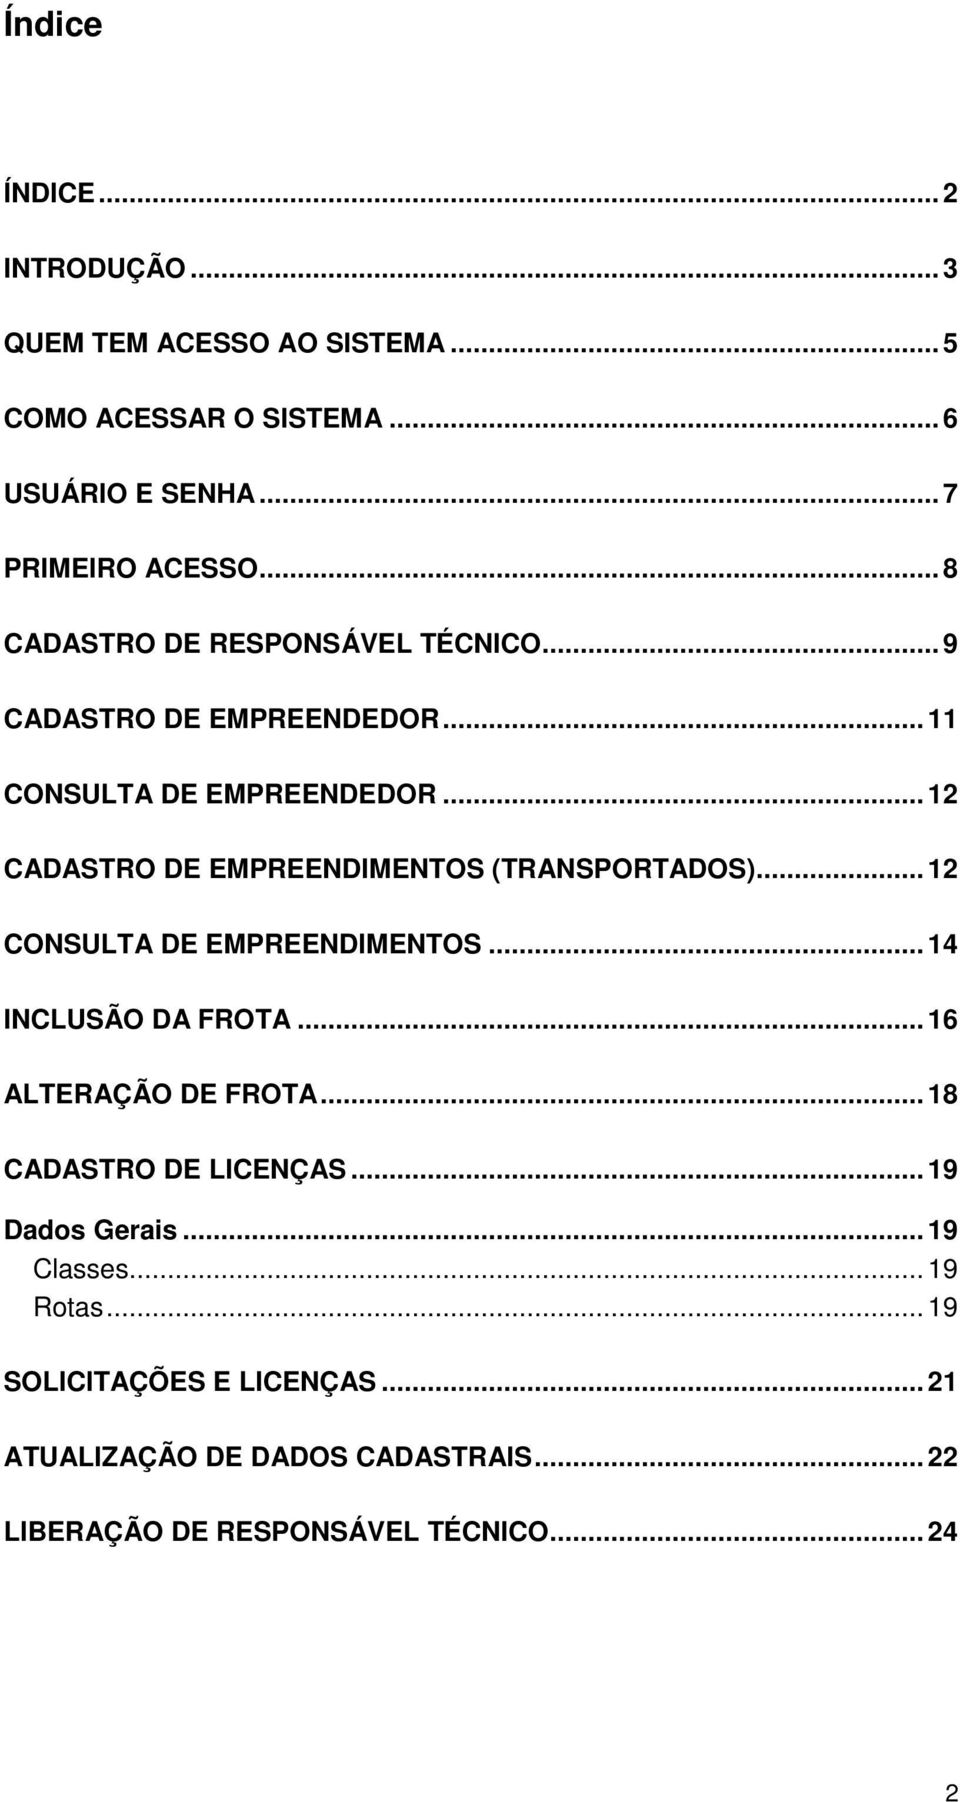 .. 12 CADASTRO DE EMPREENDIMENTOS (TRANSPORTADOS)... 12 CONSULTA DE EMPREENDIMENTOS... 14 INCLUSÃO DA FROTA... 16 ALTERAÇÃO DE FROTA.